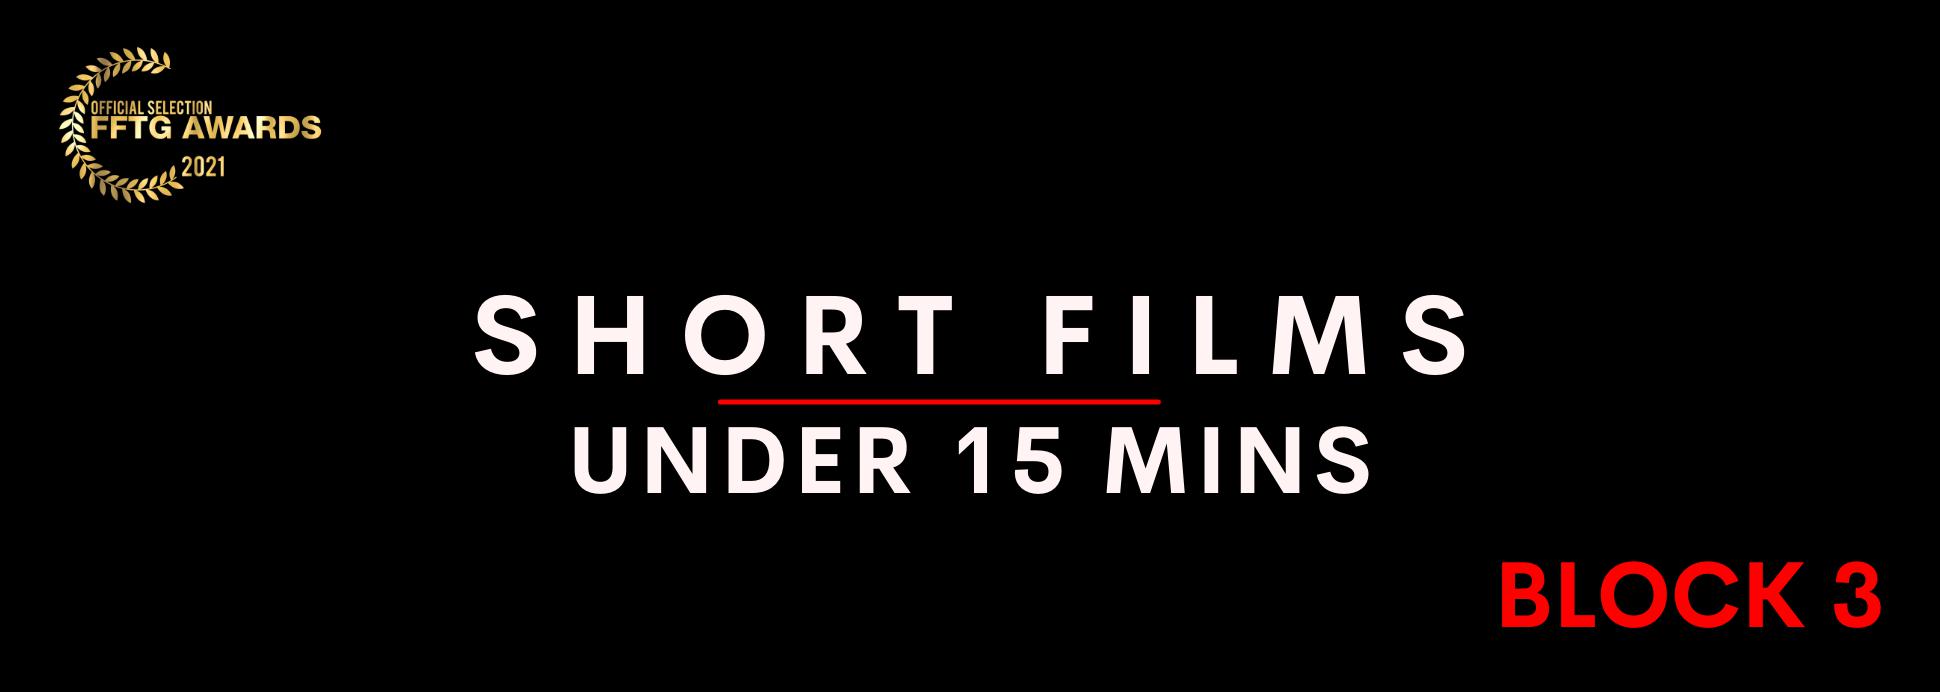 Short films under 15 mins BLOCK 3